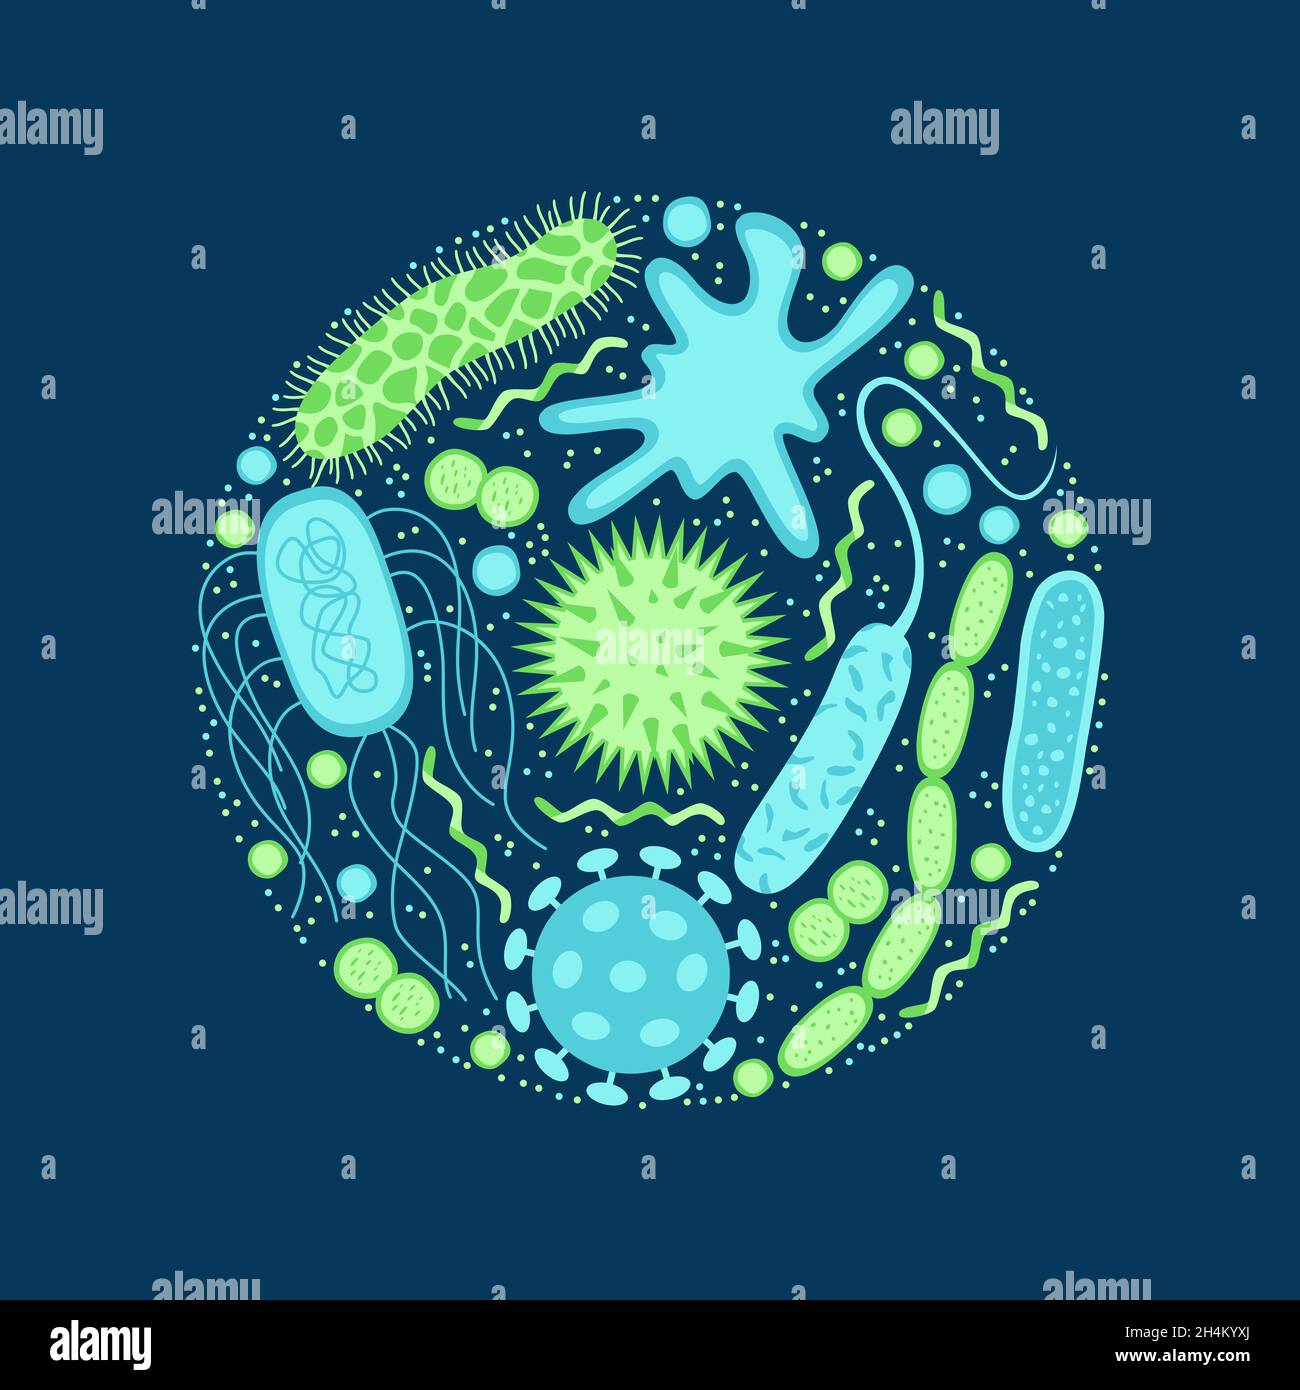 Symbole für Viren und Bakterien werden isoliert auf blauen Hintergrund gesetzt. Form der Bakterienzelle: cocci, Bazillen, Spirilla. Vektorgrafik. Stock Vektor